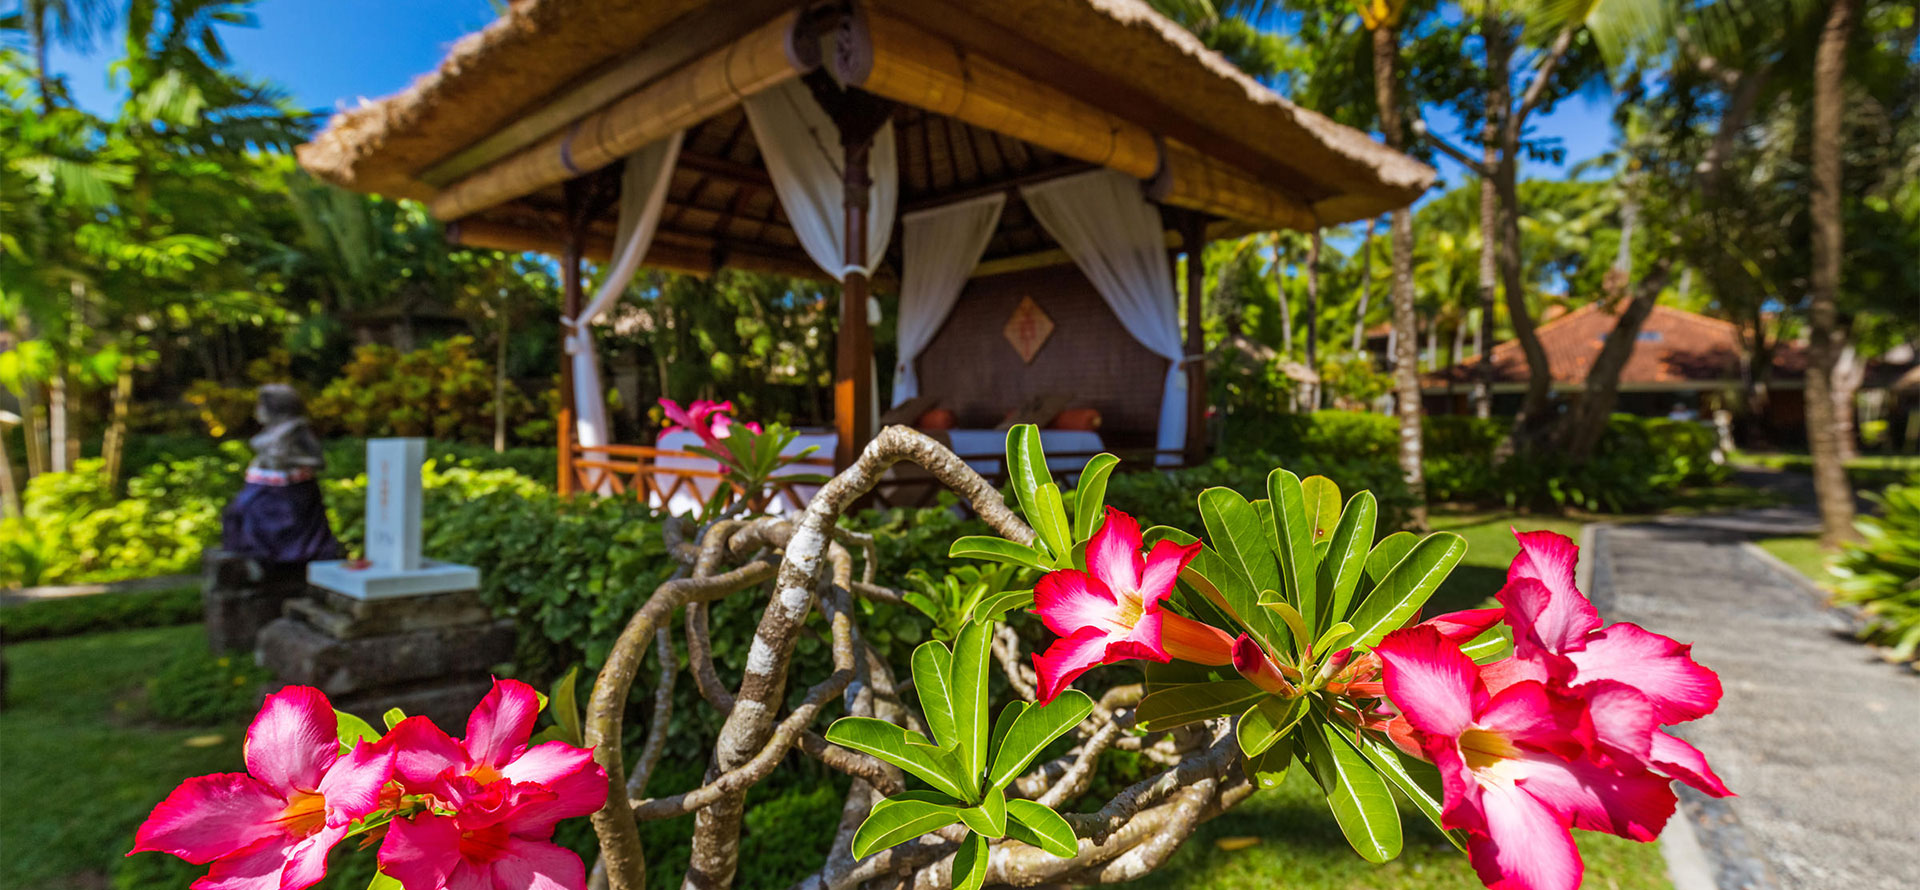 Resort in Bali.